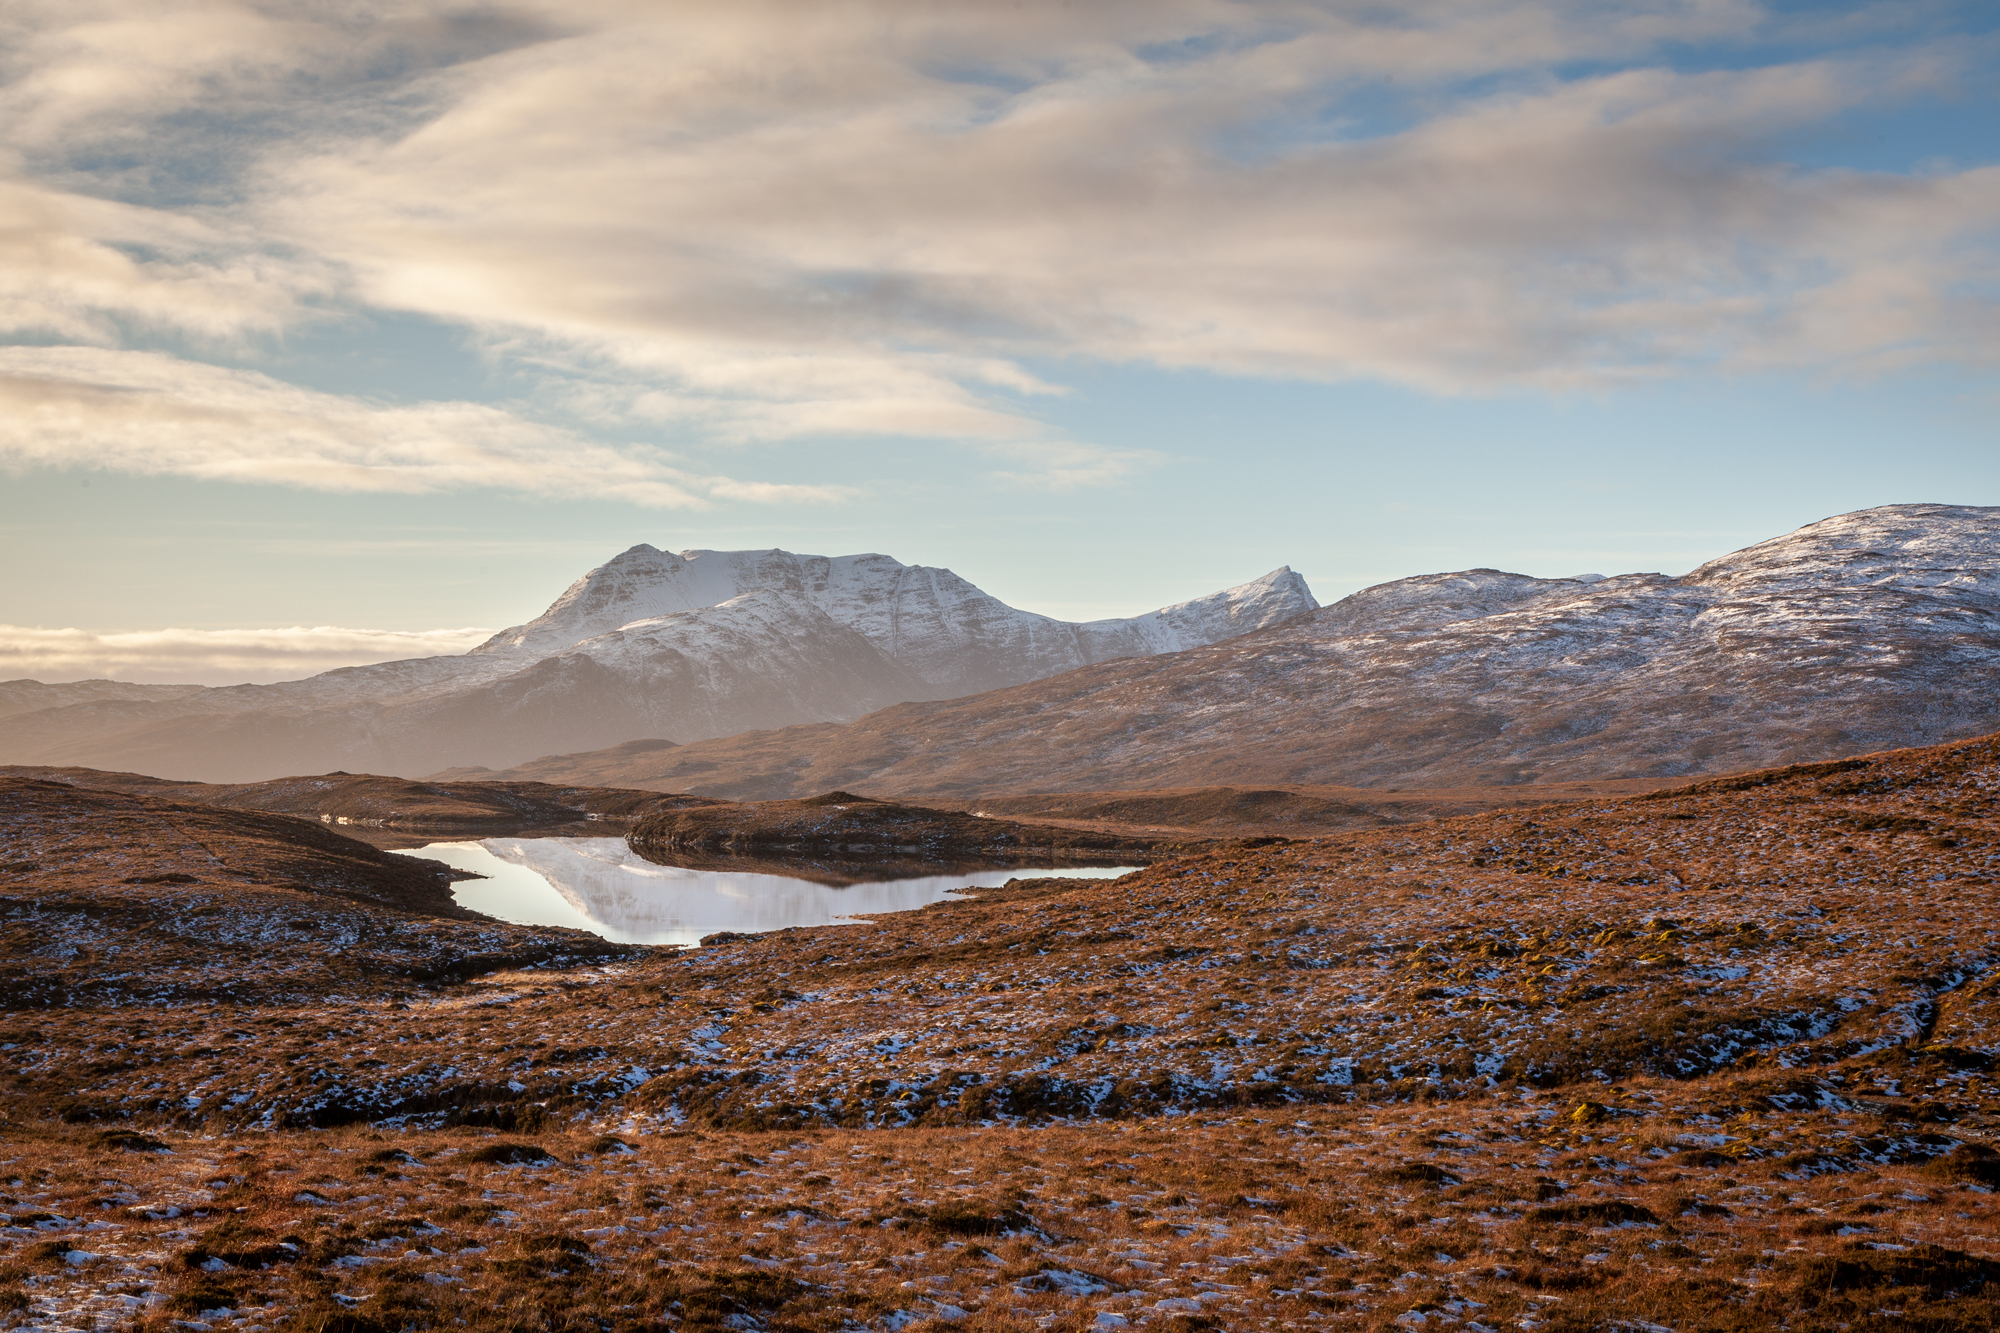 58N 5W, Assynt (Highland) by Dorcas Eatch